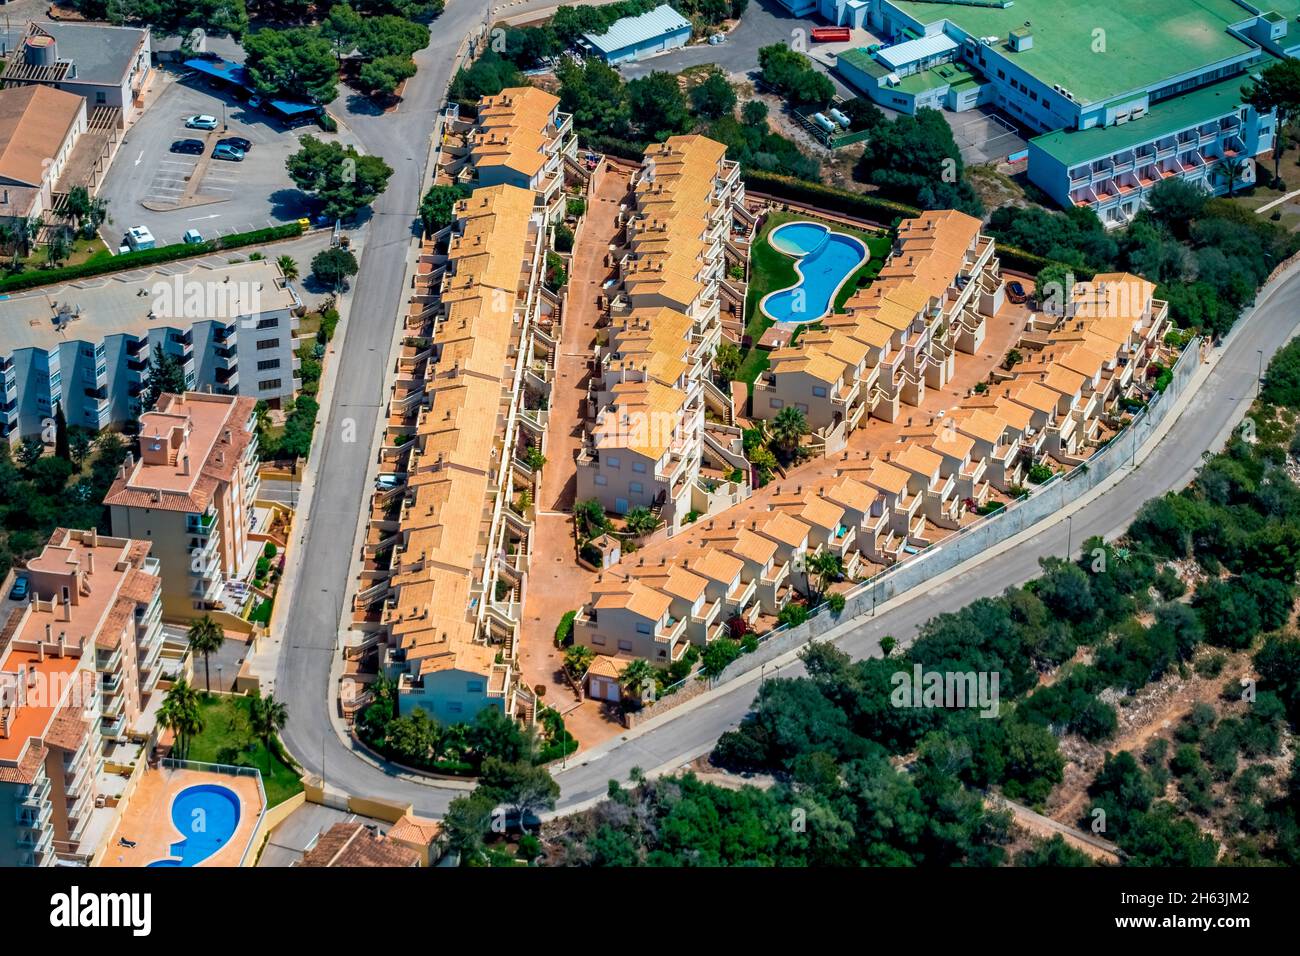 vista aerea,complesso di case vacanze a cales de mallorca,manacor,isole baleari,maiorca,spagna Foto Stock